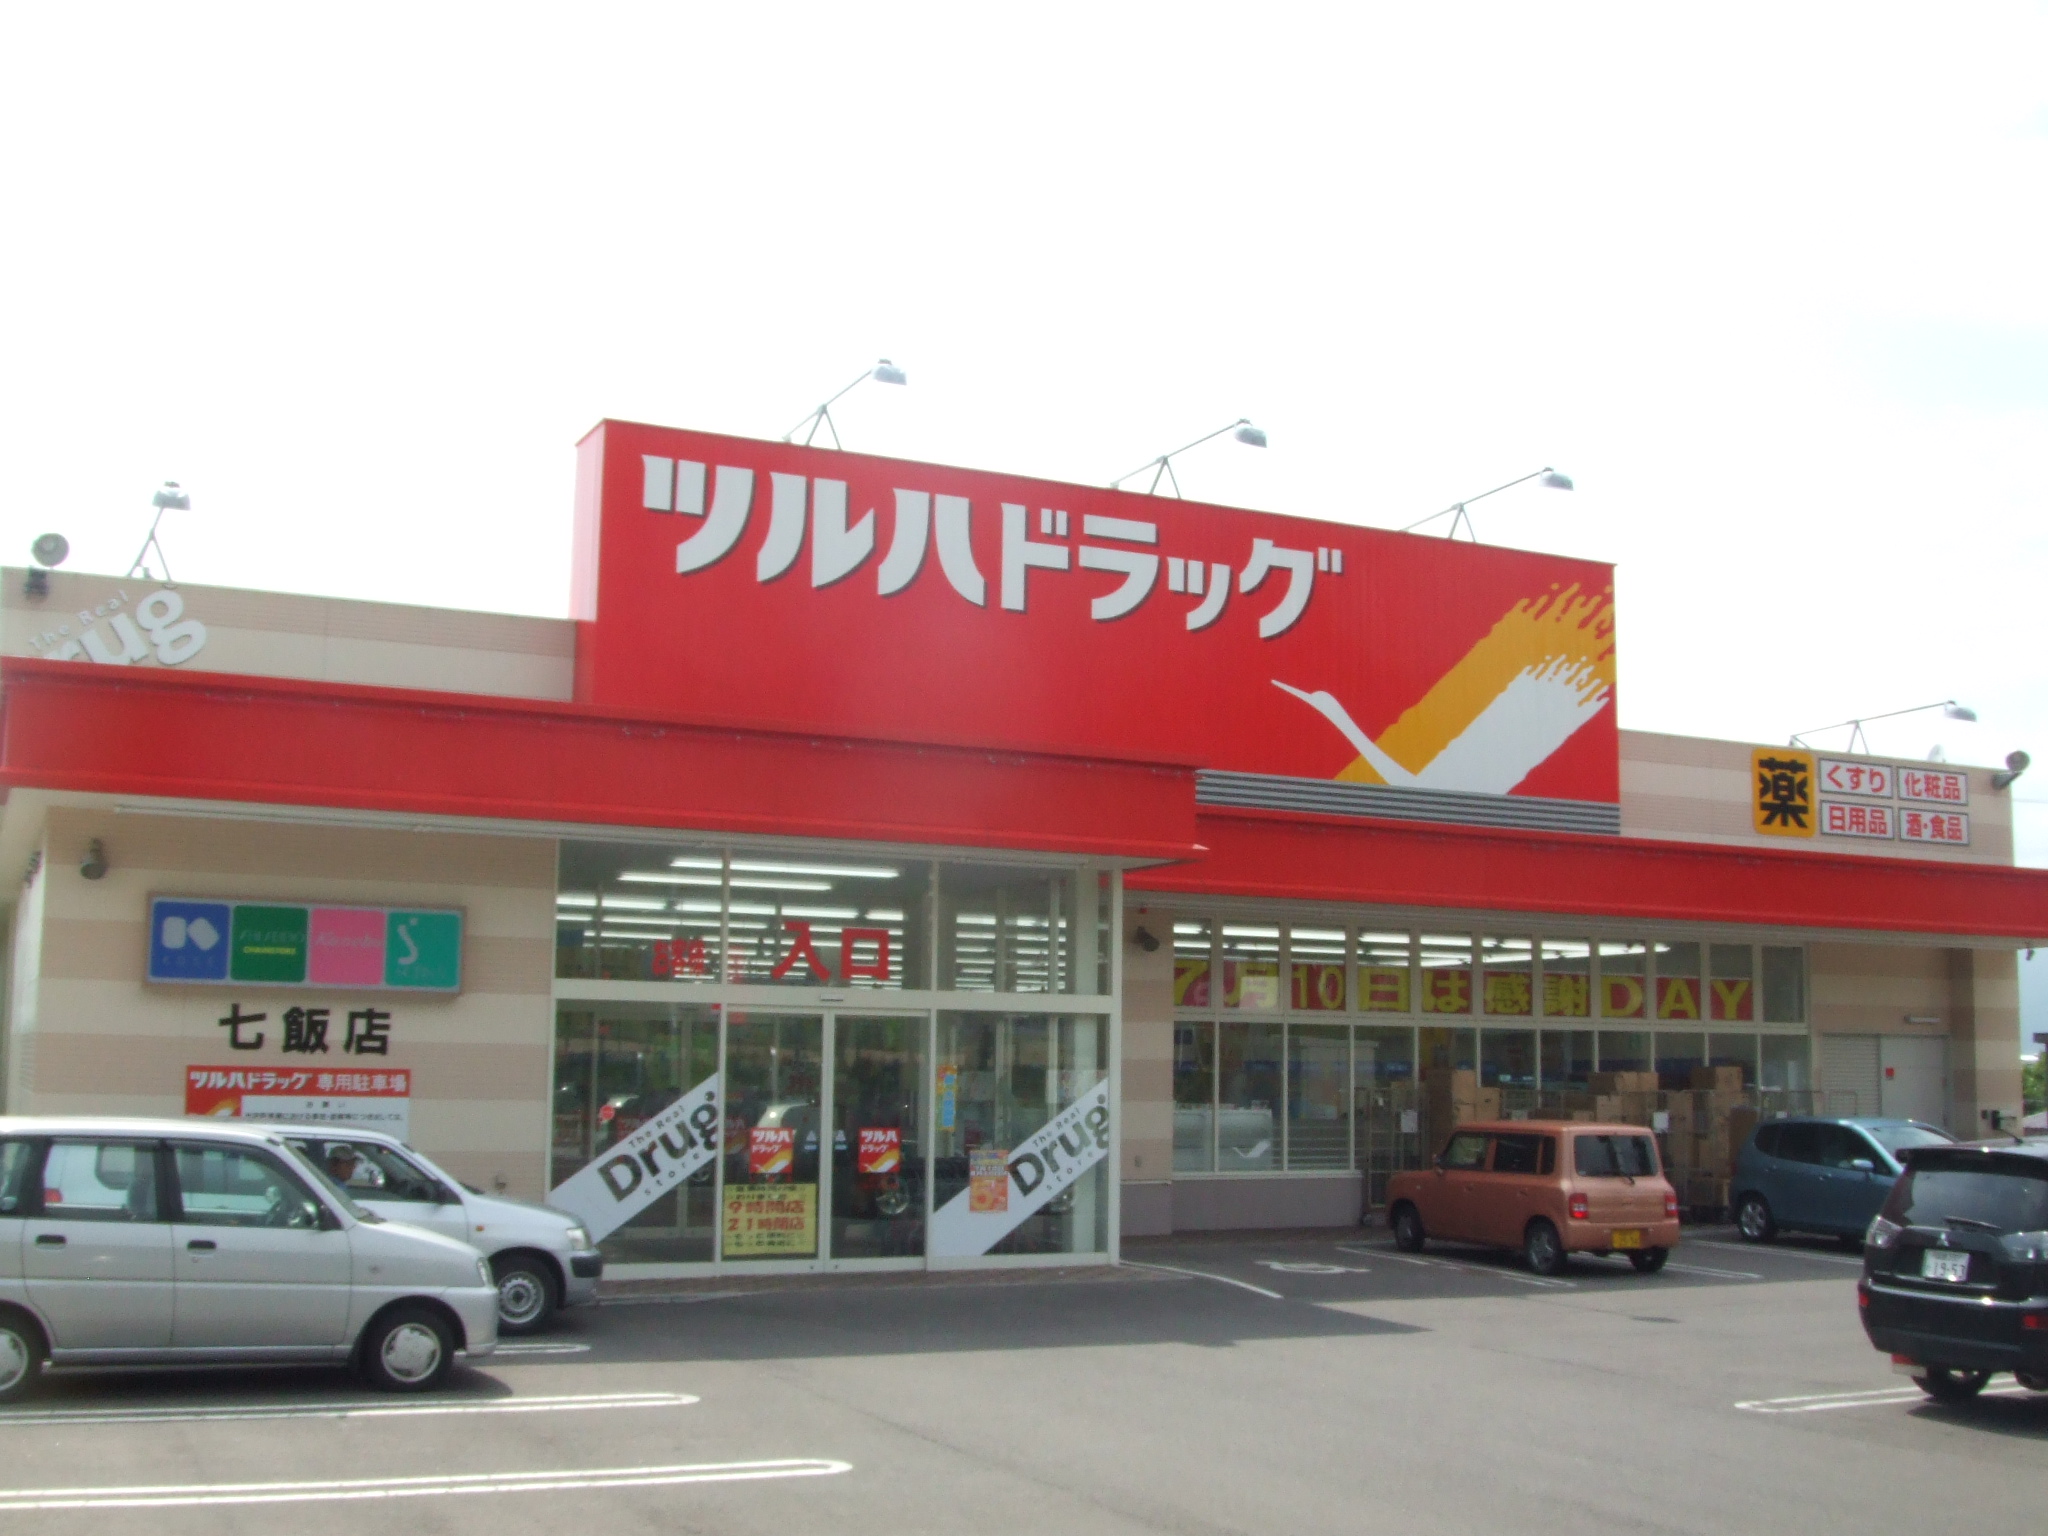 Dorakkusutoa. Tsuruha drag Nanae shop 907m until (drugstore)